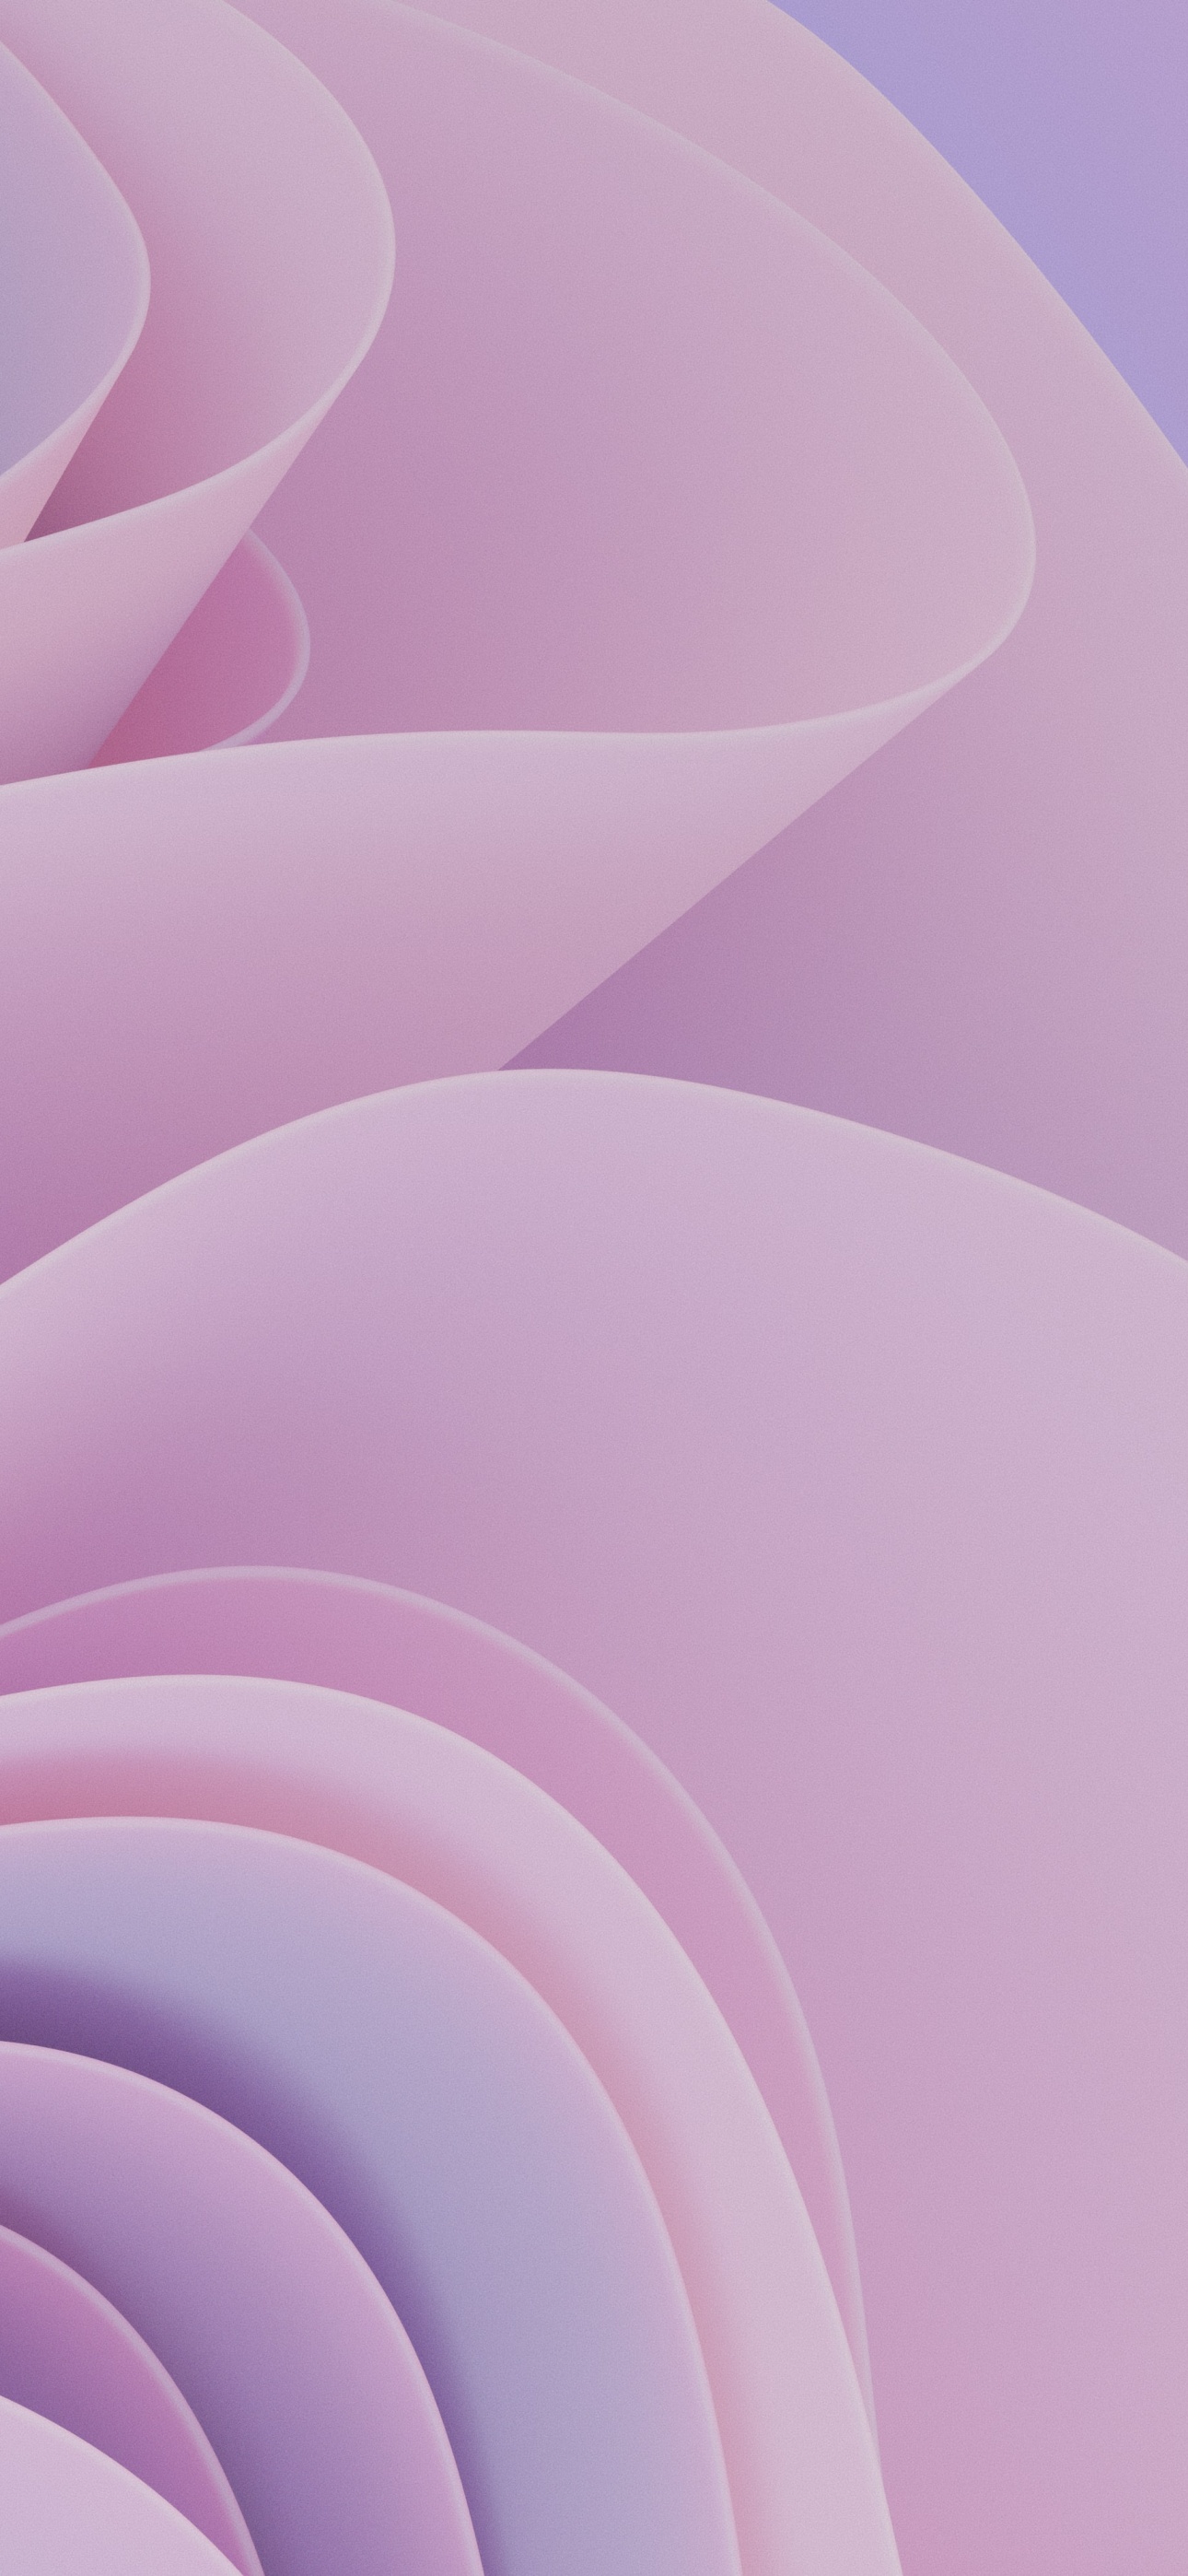 Hãy giúp màn hình của bạn trở nên sinh động hơn với hình nền 3D Render 4K sóng nữ tính trừu tượng #7041 màu hồng. Với sự kết hợp tuyệt vời giữa độ sắc nét và chất lượng hình ảnh, bạn sẽ có một trải nghiệm tuyệt vời khi sử dụng điện thoại. Hãy tận hưởng và cảm nhận sự khác biệt đó.